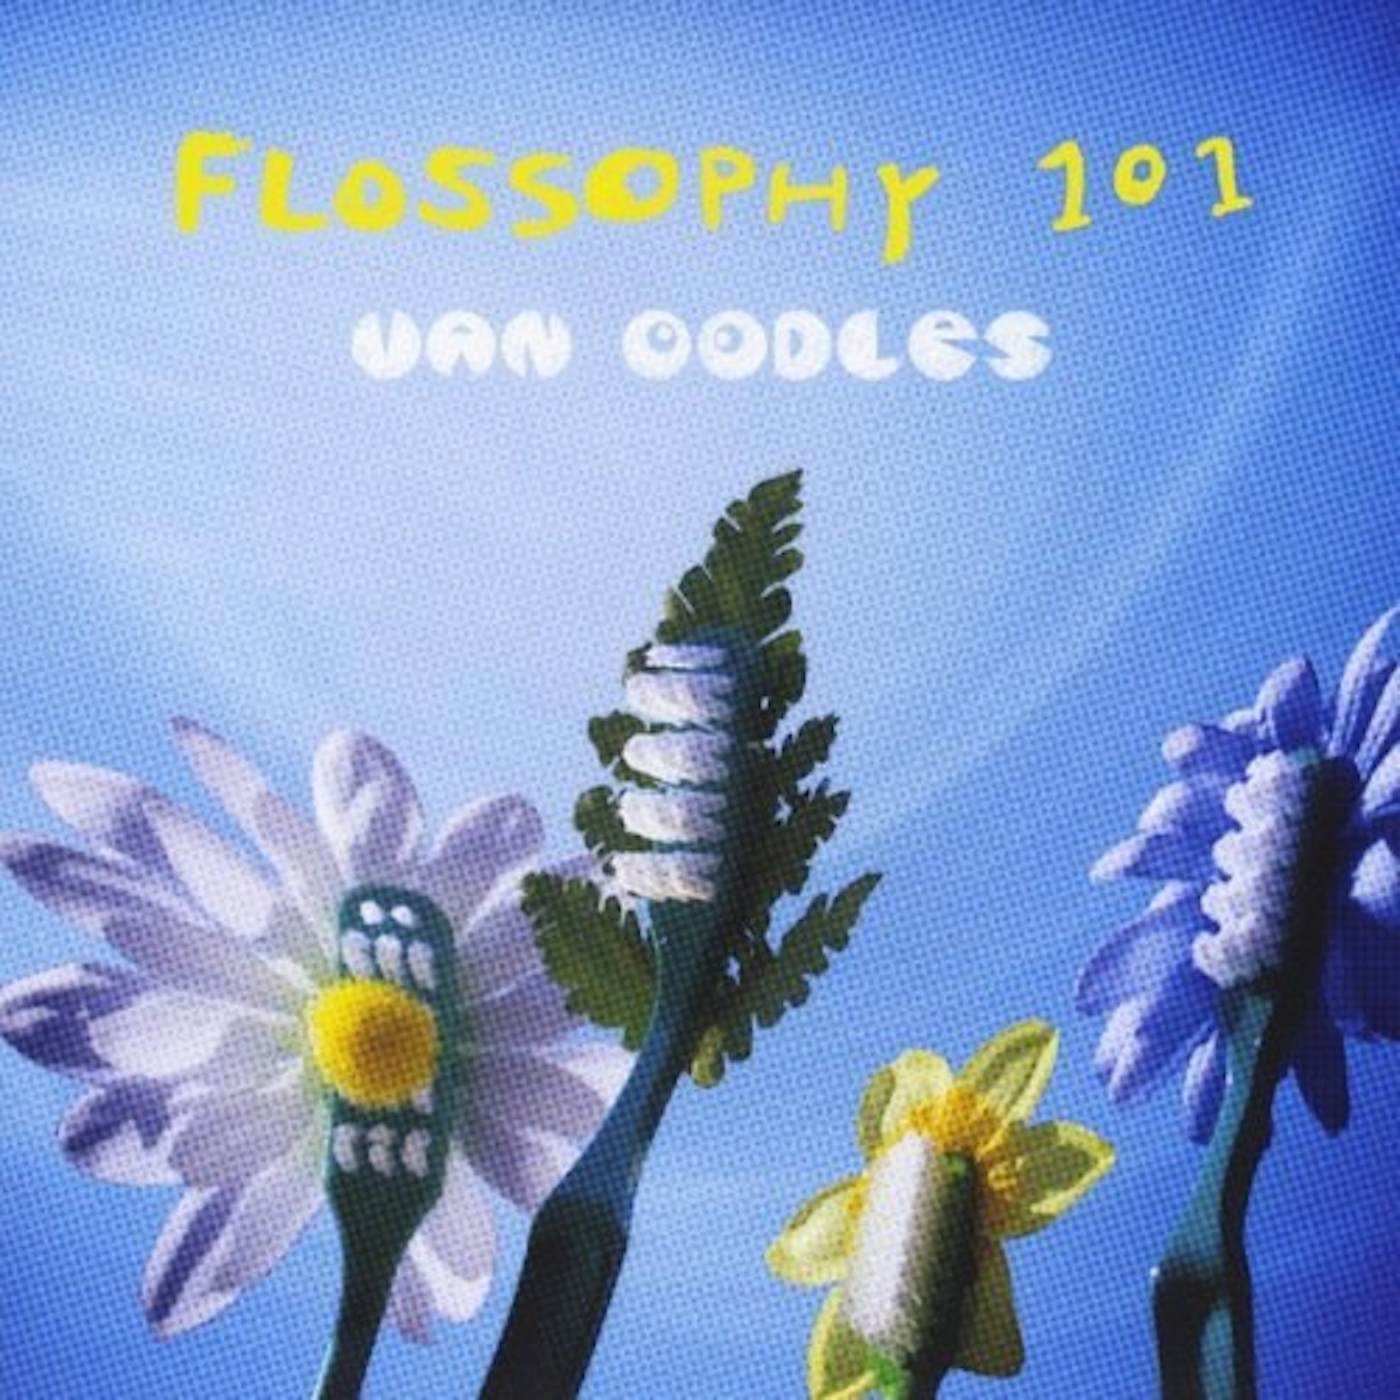 Van Oodles FLOSSOPHY 101 CD